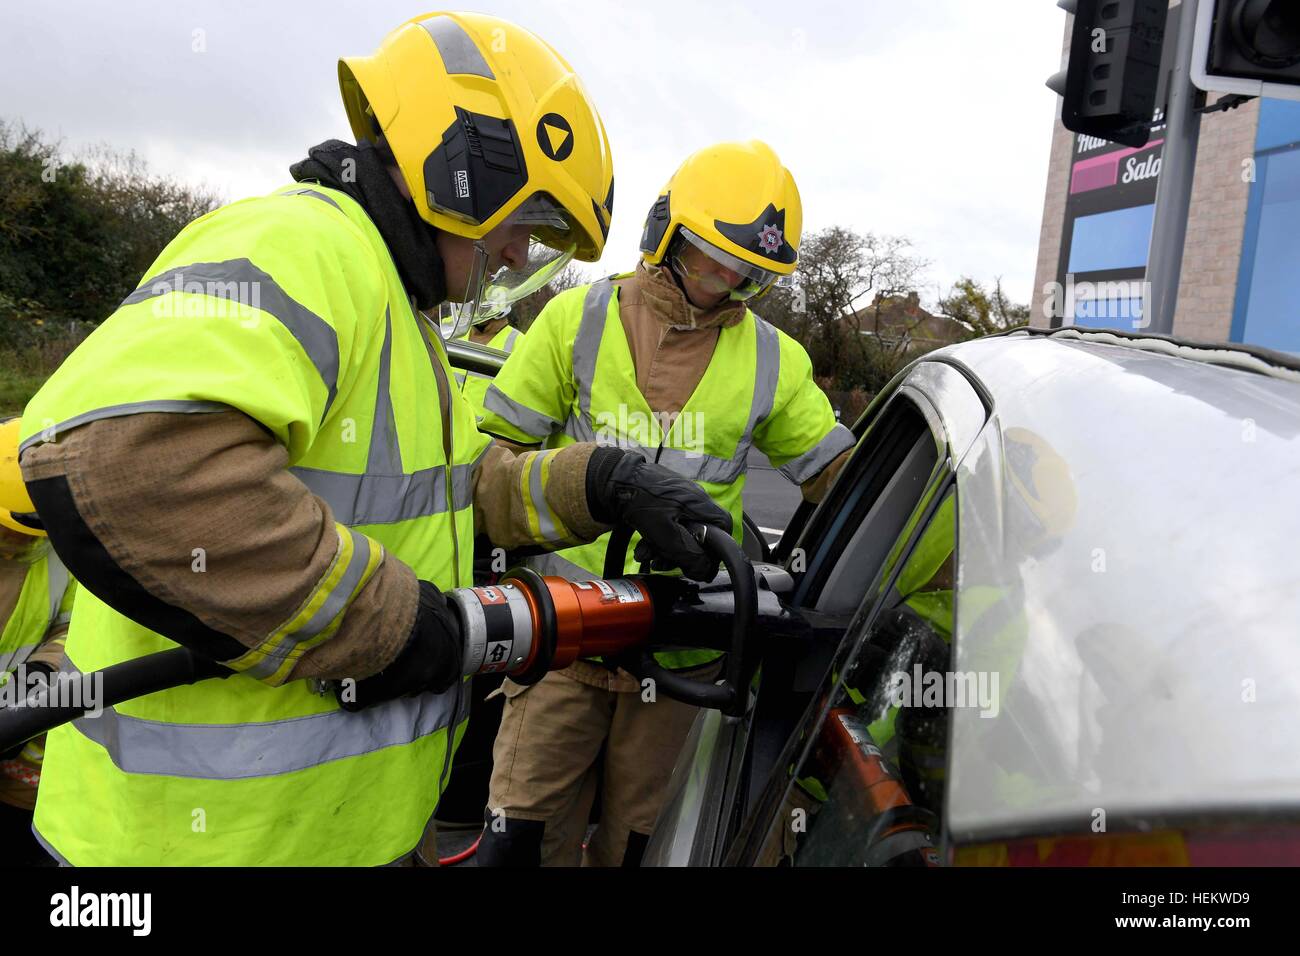 Feuerwehrmann, schneiden Sie das Dach eines Autos bei der Szene einer Unfall-Demonstration, UK. "Autounfall" Szene, RTA oder RTC, abgestürzt Auto mit Feuerwehr-Arbeit Stockfoto